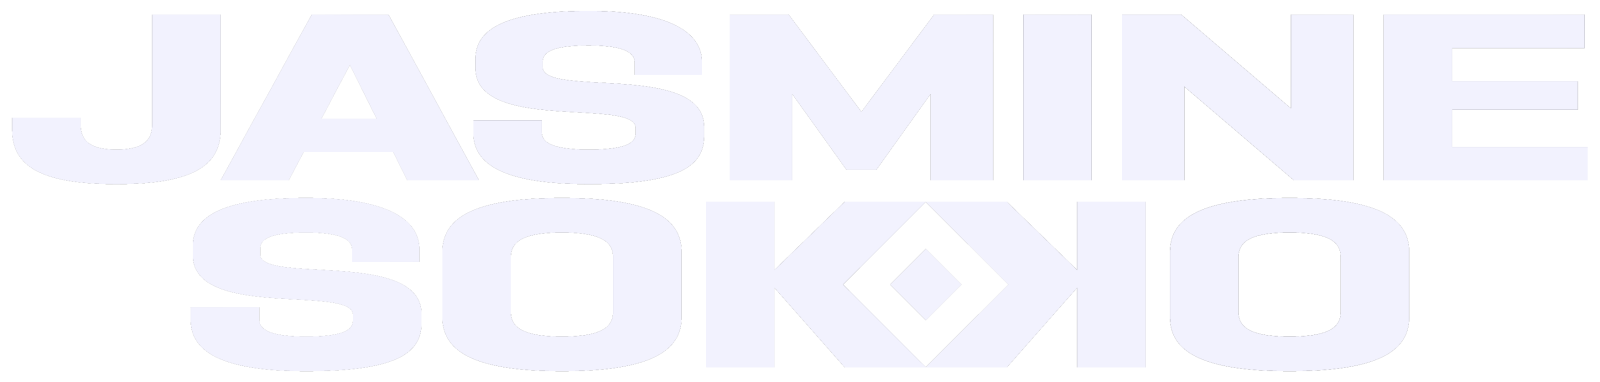 sokko logo